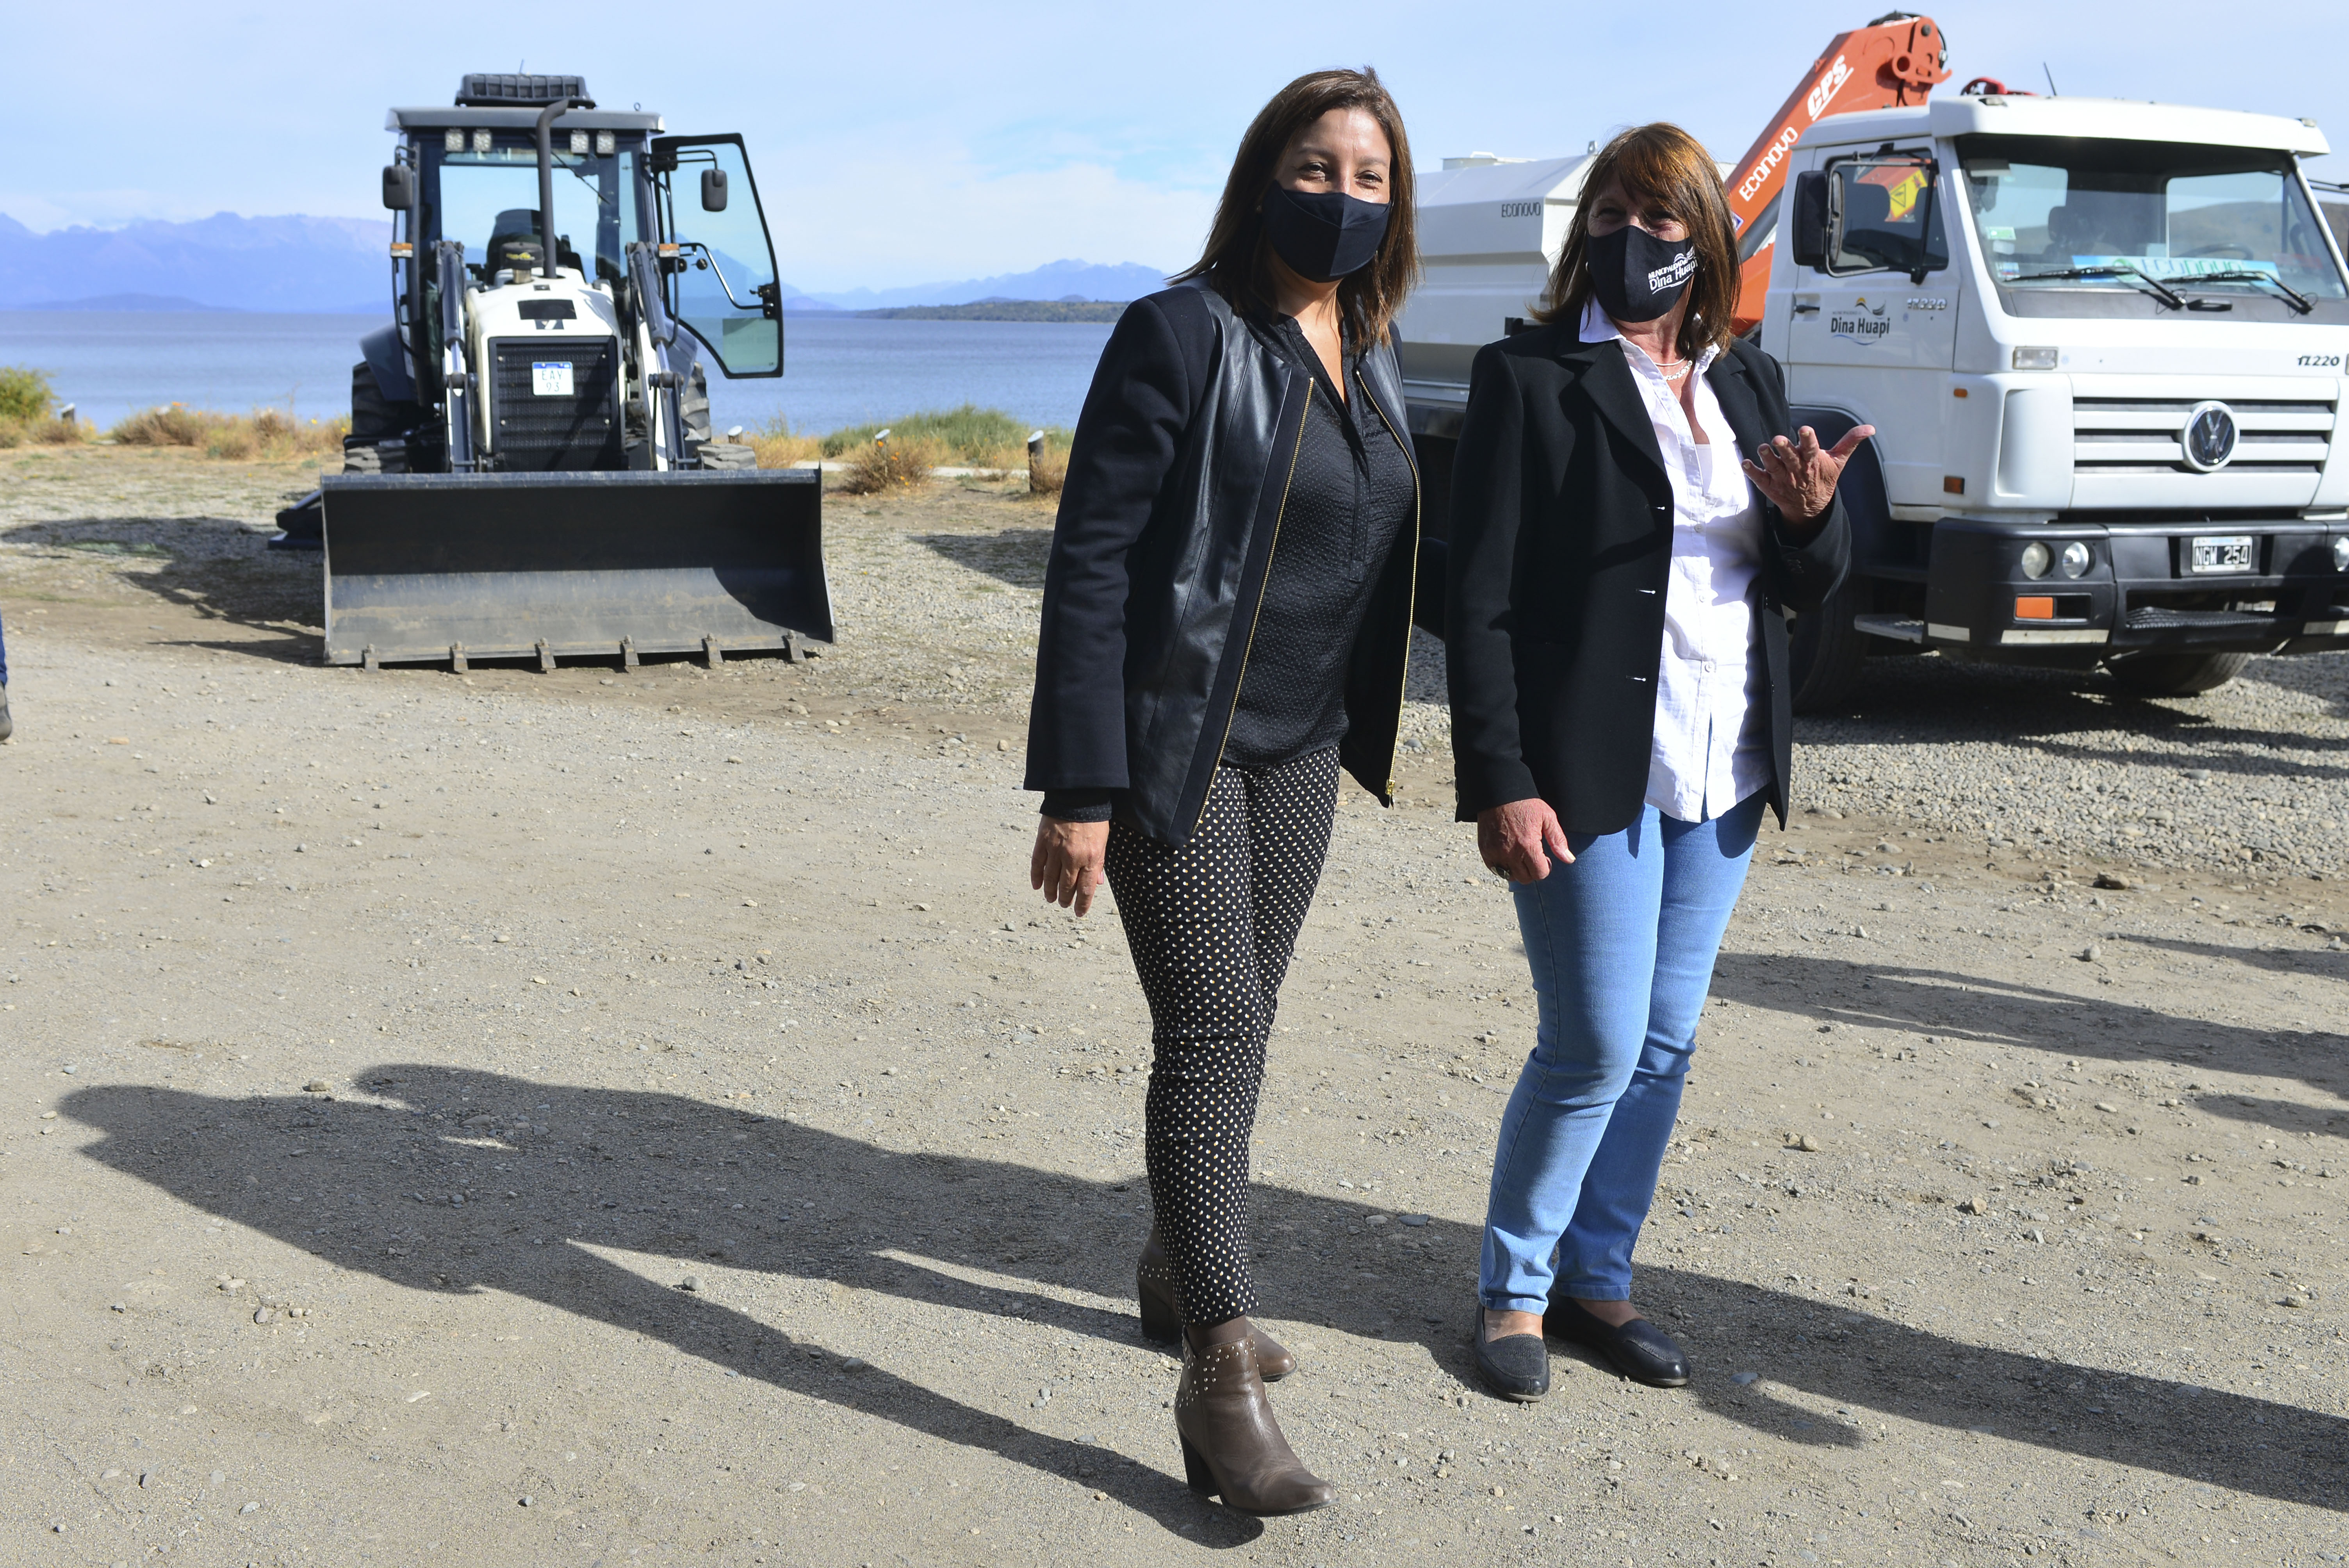 La gobernadora acompañó a la intendenta de Dina Huapi en la presentación de los tres vehículos nuevos para esa localidad. Foto: Chino Leiva